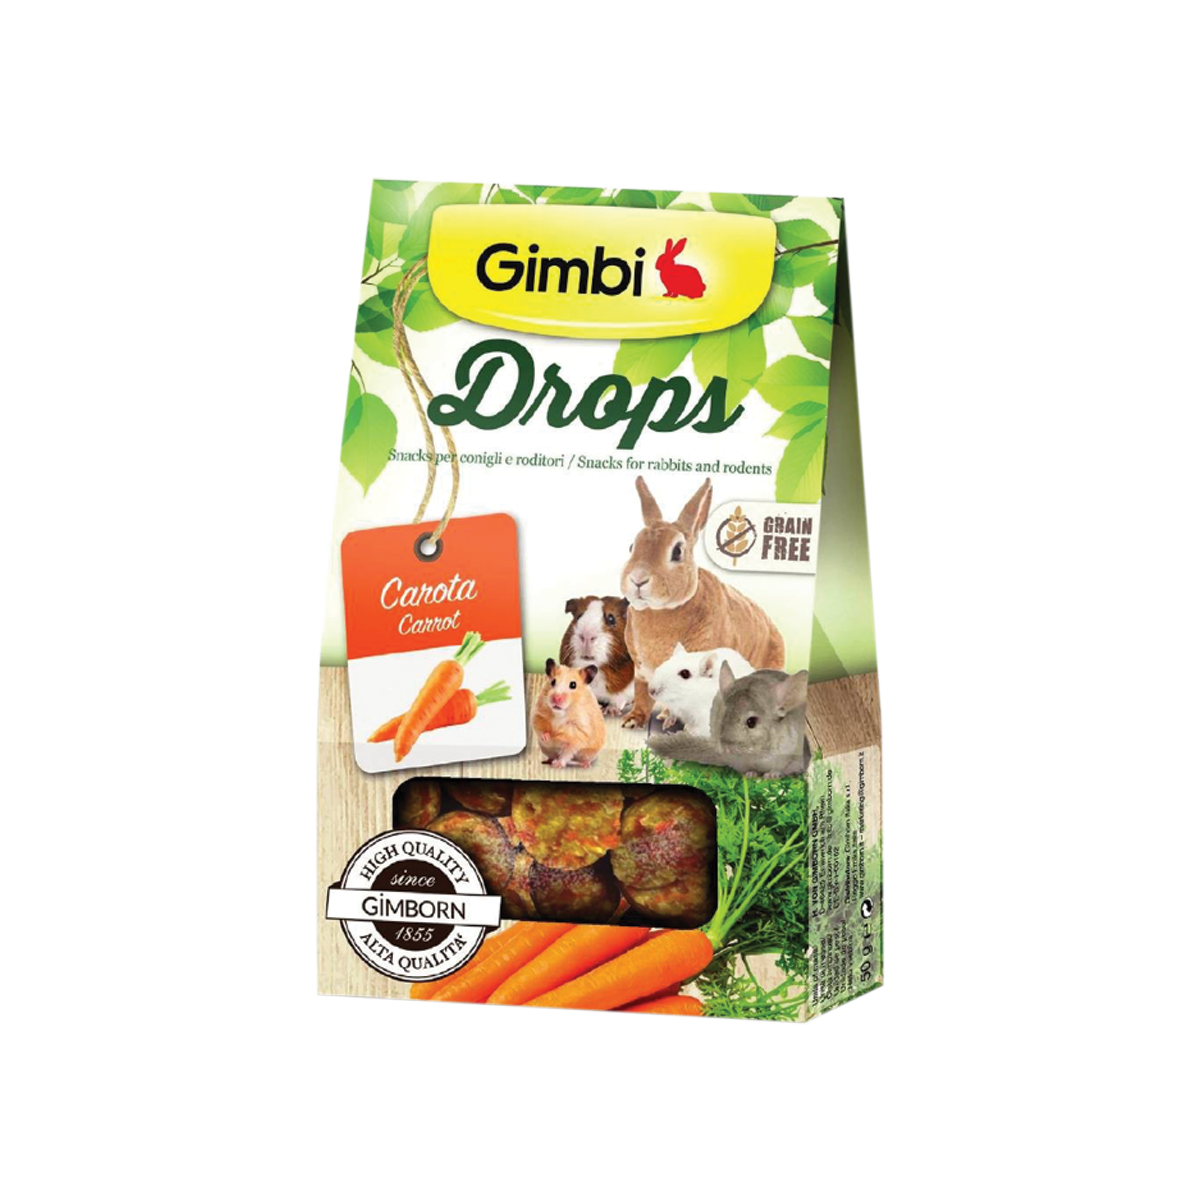 Gimbi Drops with Carrot กิมบิ ขนมขบเคี้ยวผสมแครอทสำหรับกระต่ายและหนูสายพันธุ์เล็ก ขนาด 50 กรัม